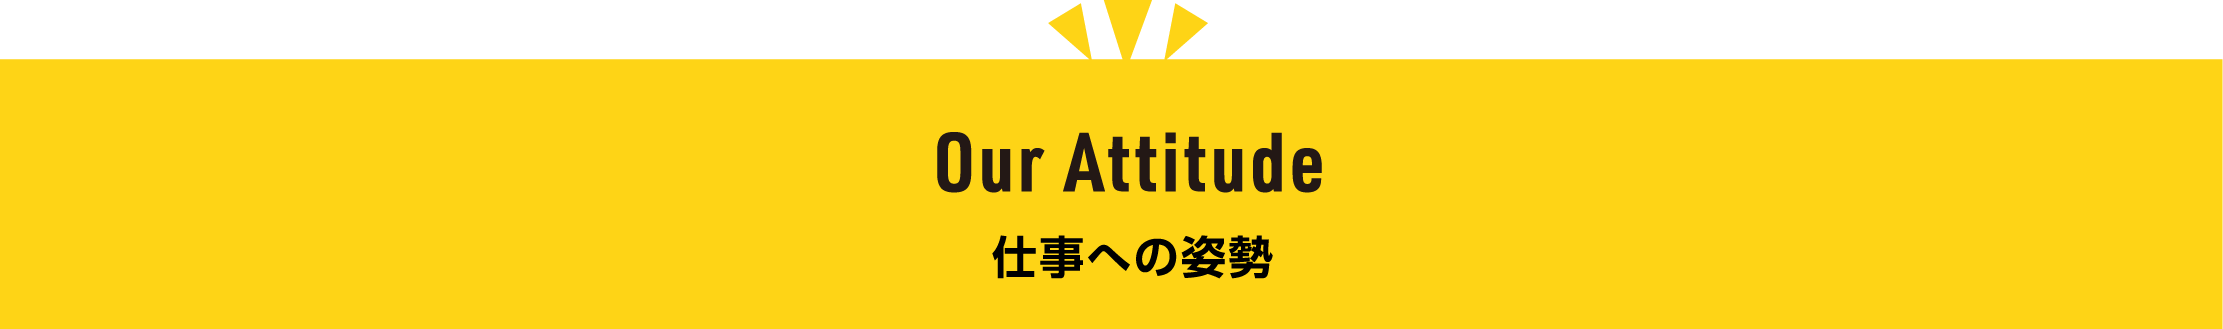 Our Attitude 仕事への姿勢